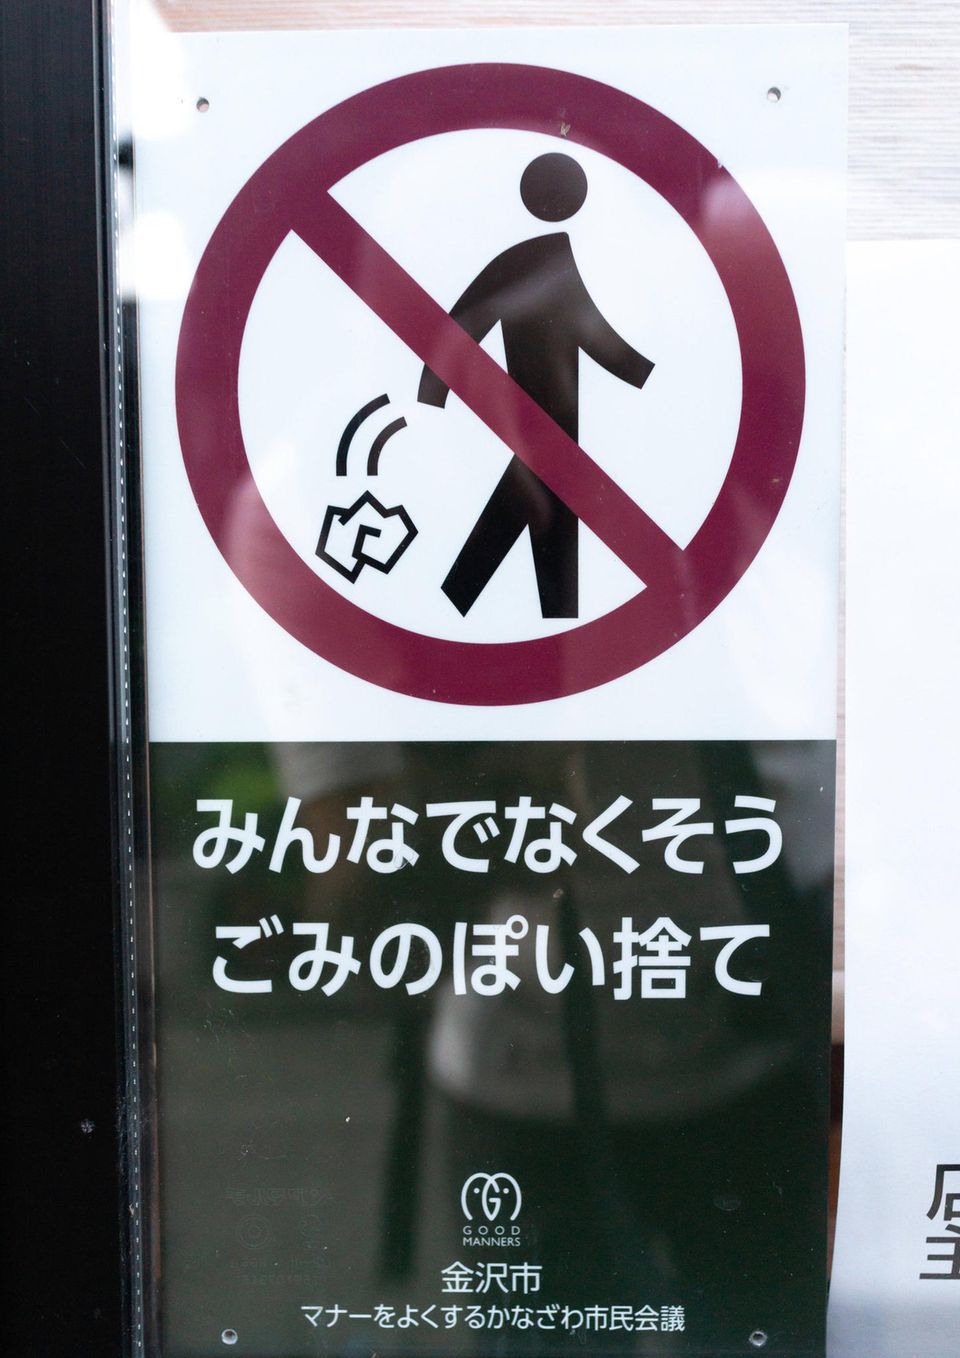 Un panneau au Japon indique de ne pas jeter de déchets dans la rue